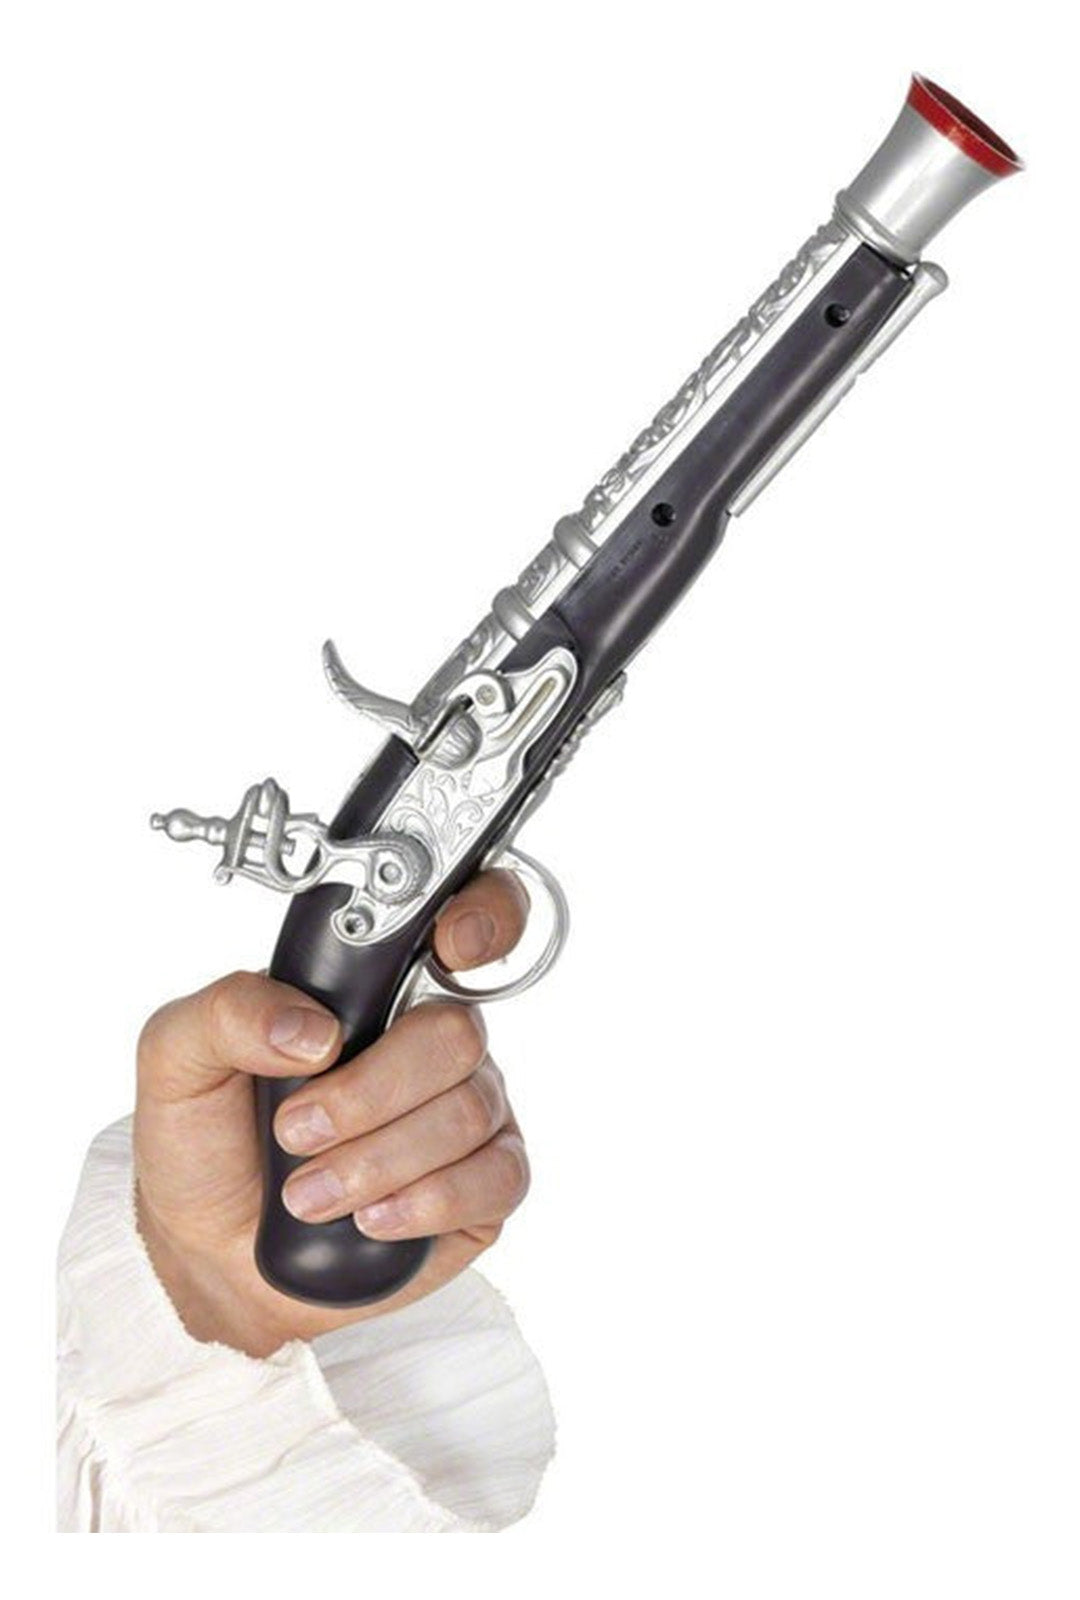 Pirate Toy Gun